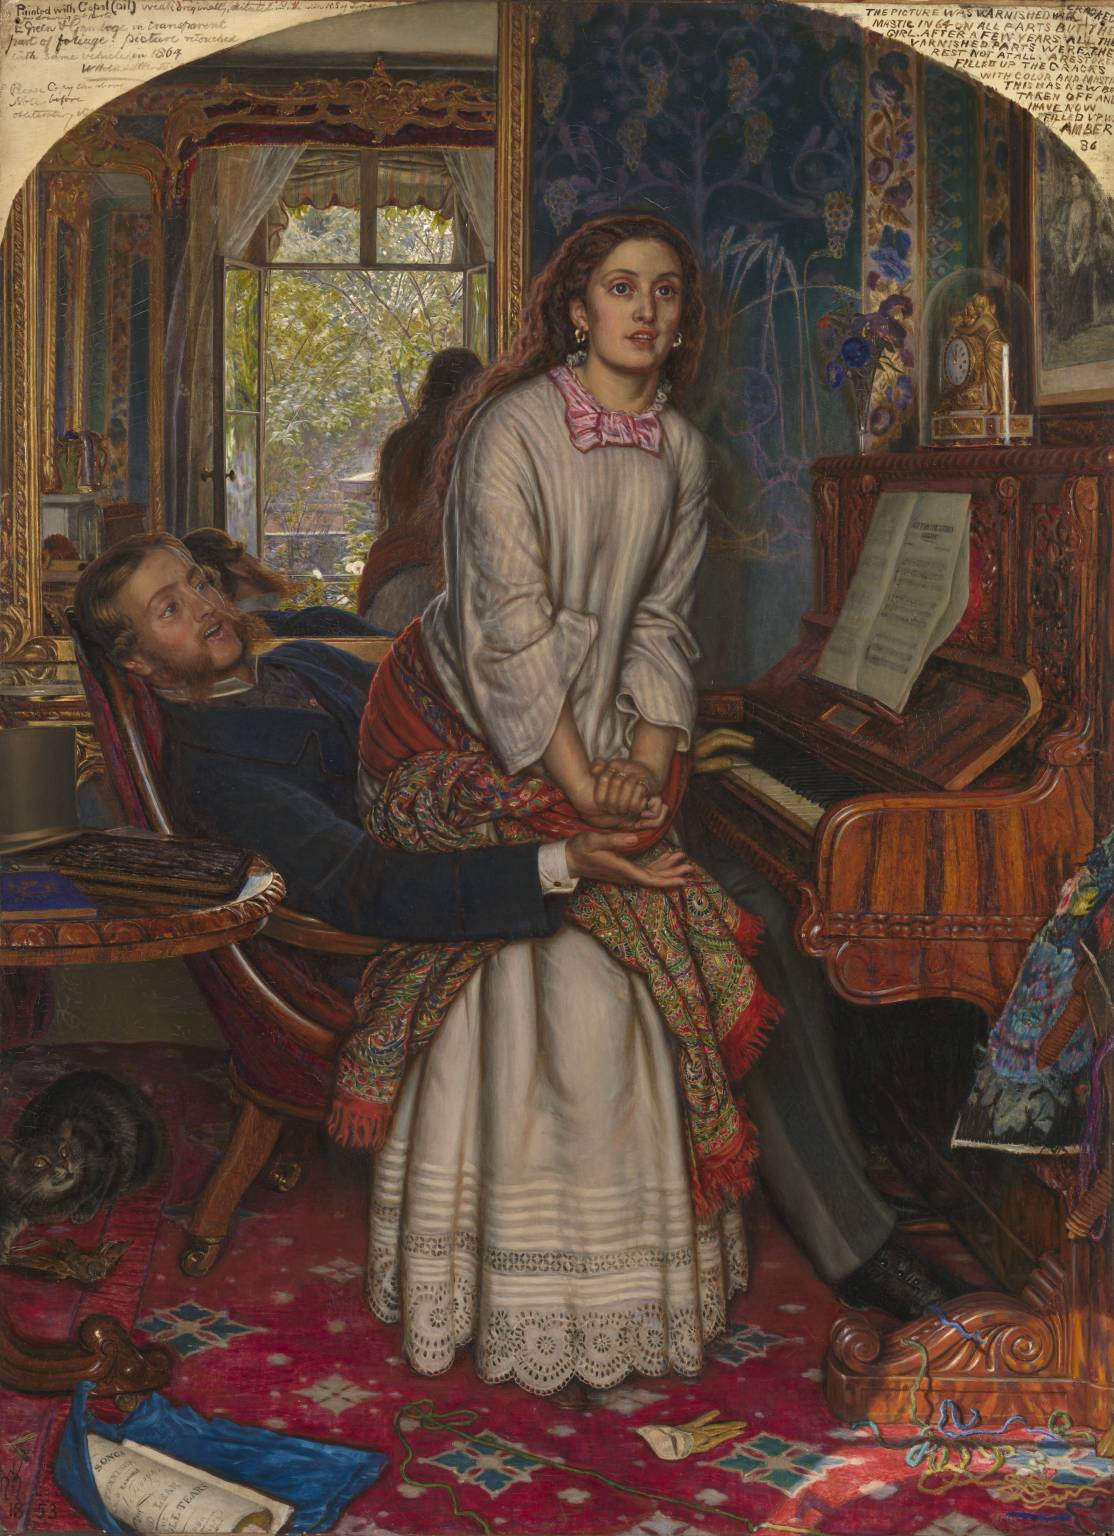 W. H. Hunt. El Despertar de la conciencia. 1853. Img. Tate Britain